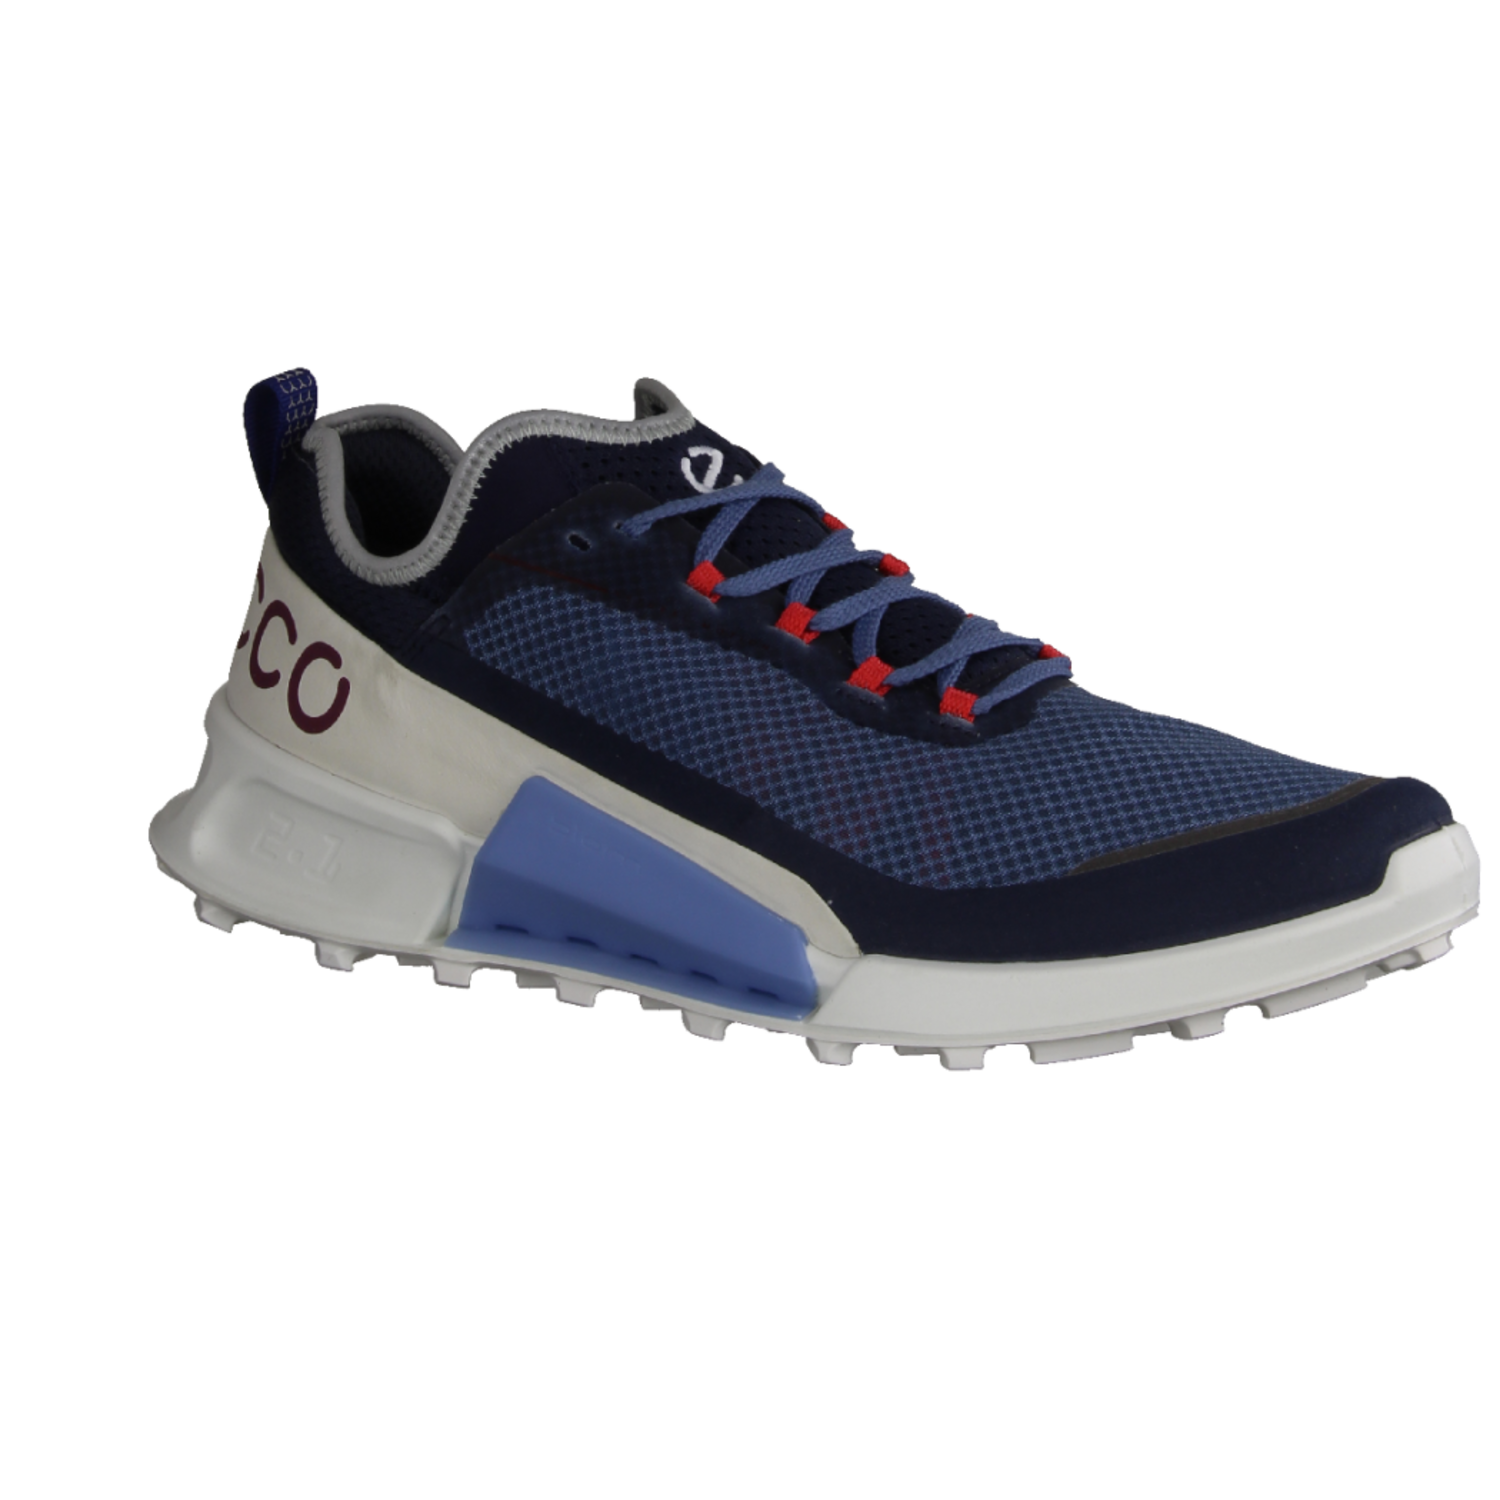 Sneaker Country Ecco Blue/Shadow für White moderner Marine/Retro Biom X Herren 8228046059 2.1 M